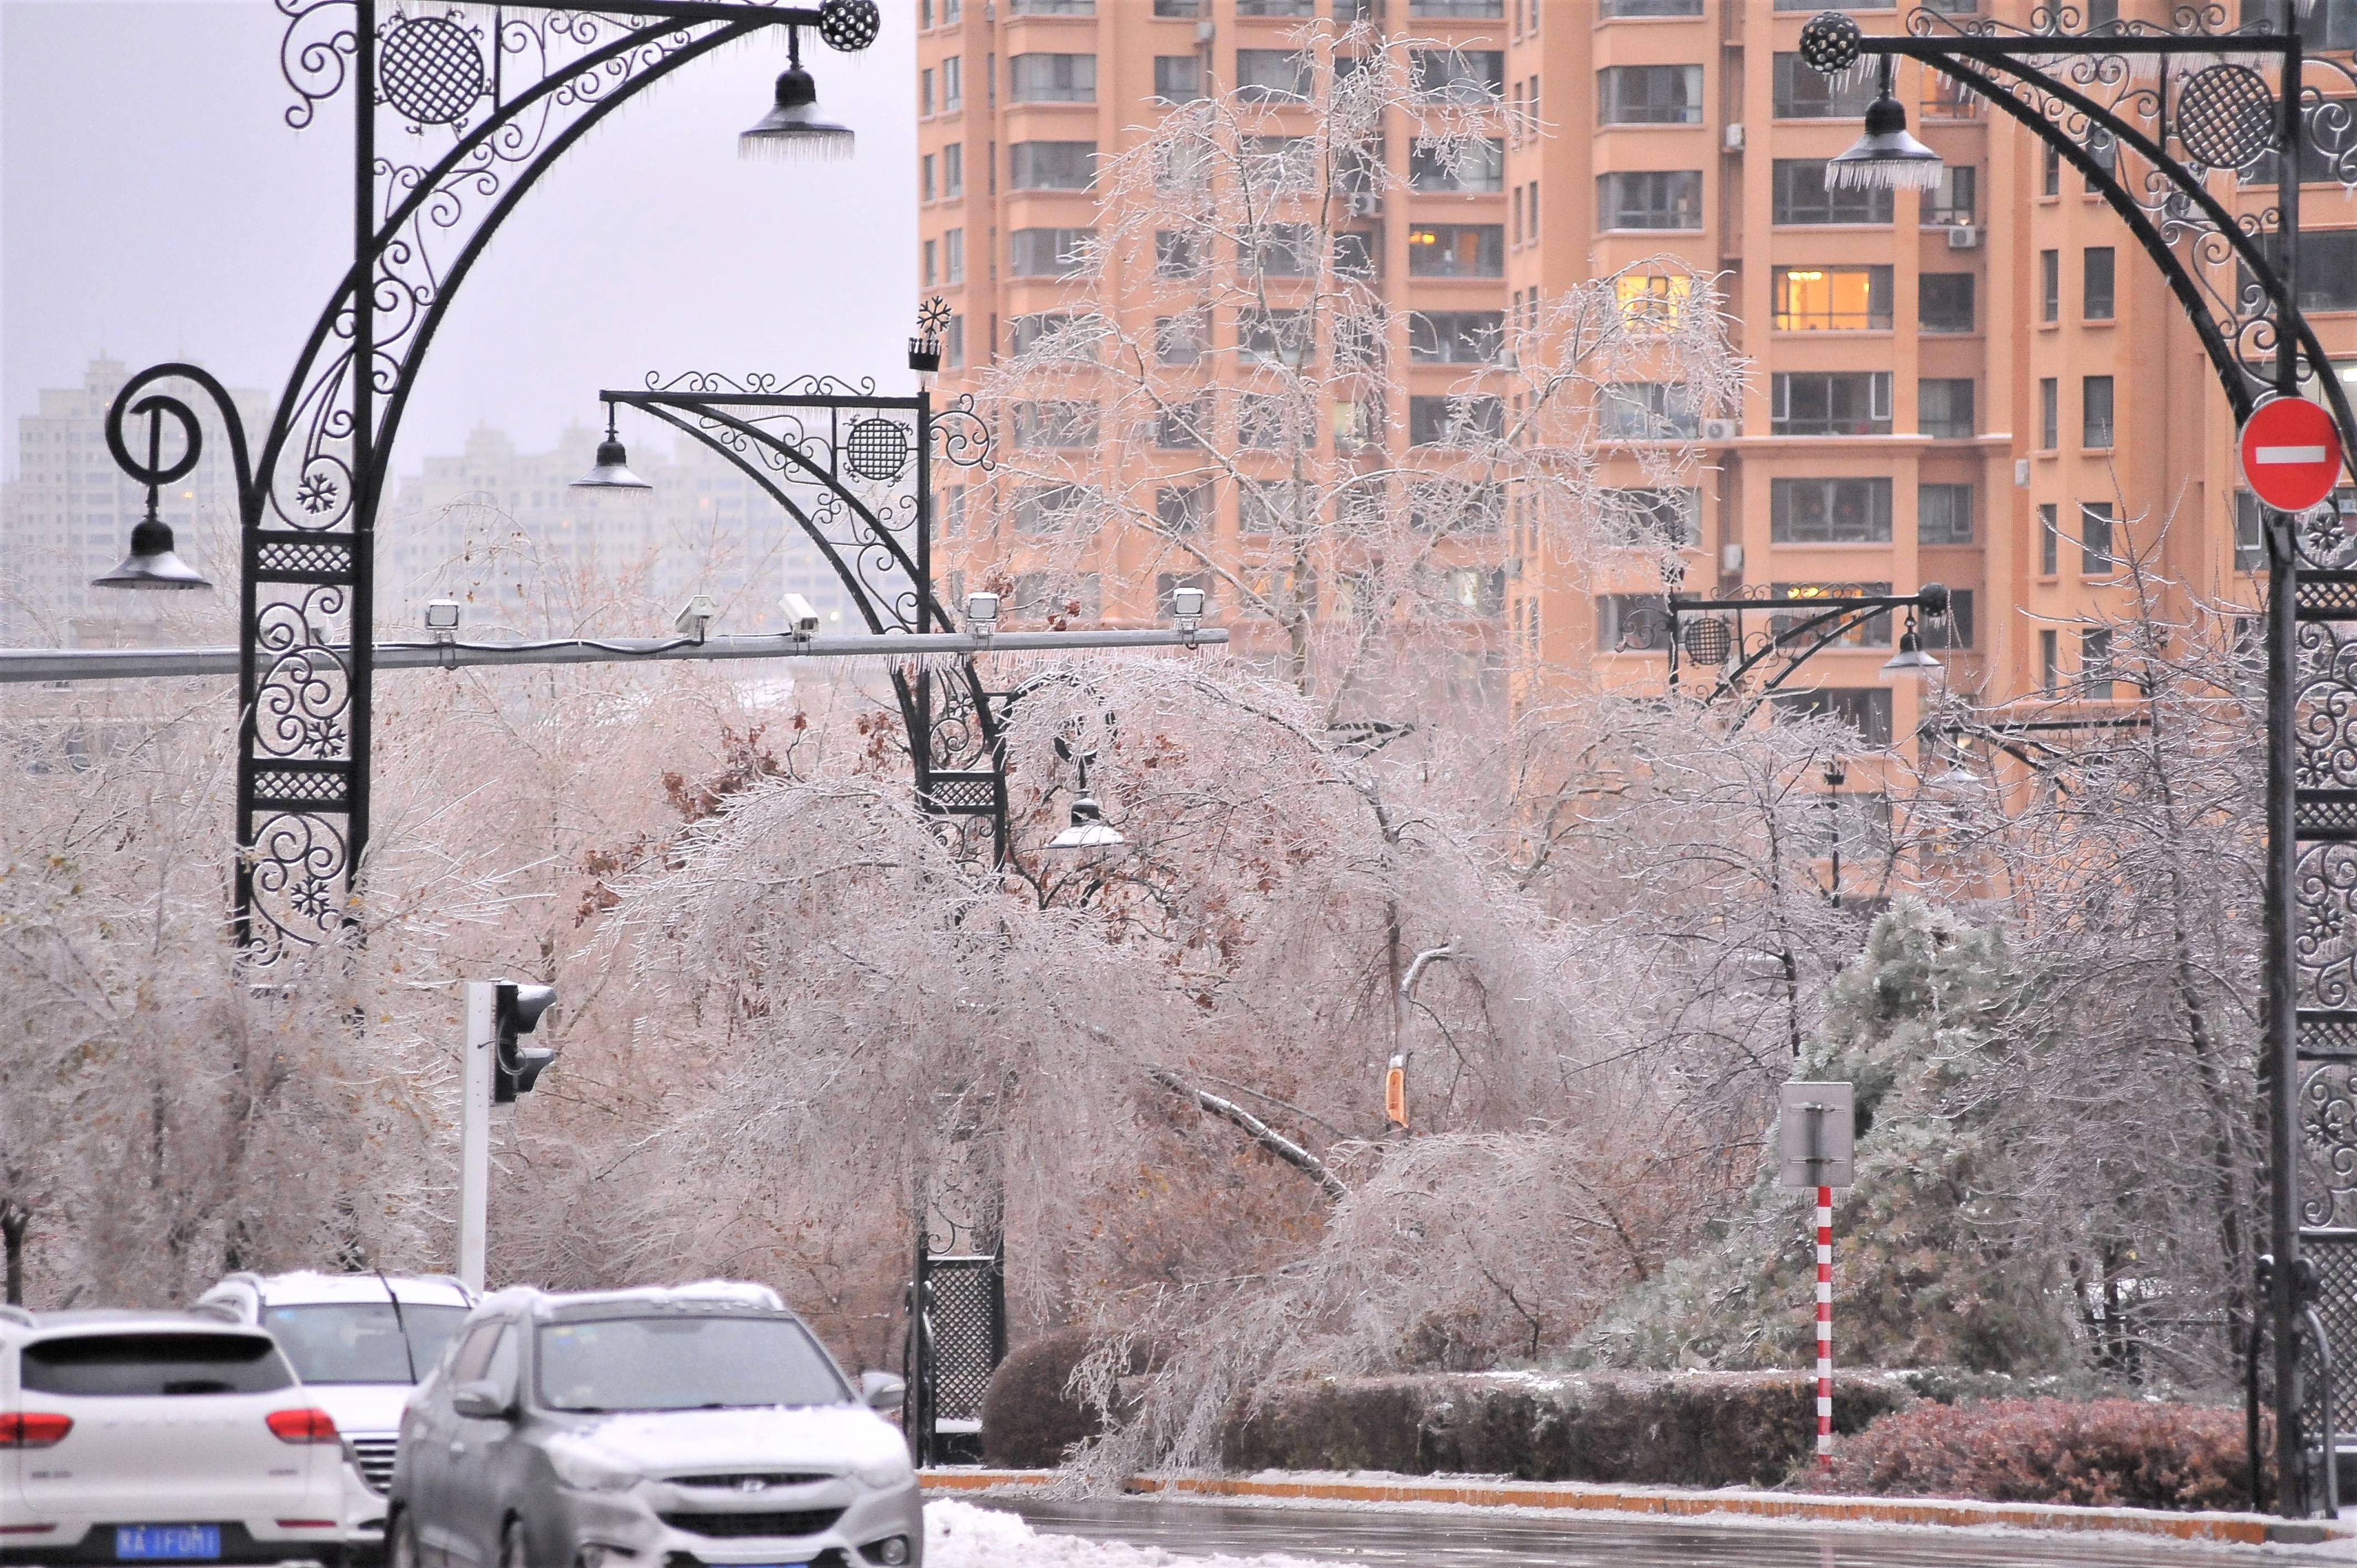 8日,暴雪中的哈尔滨又迎来了冻雨,大风,道路结冰,人们在狂风中艰难